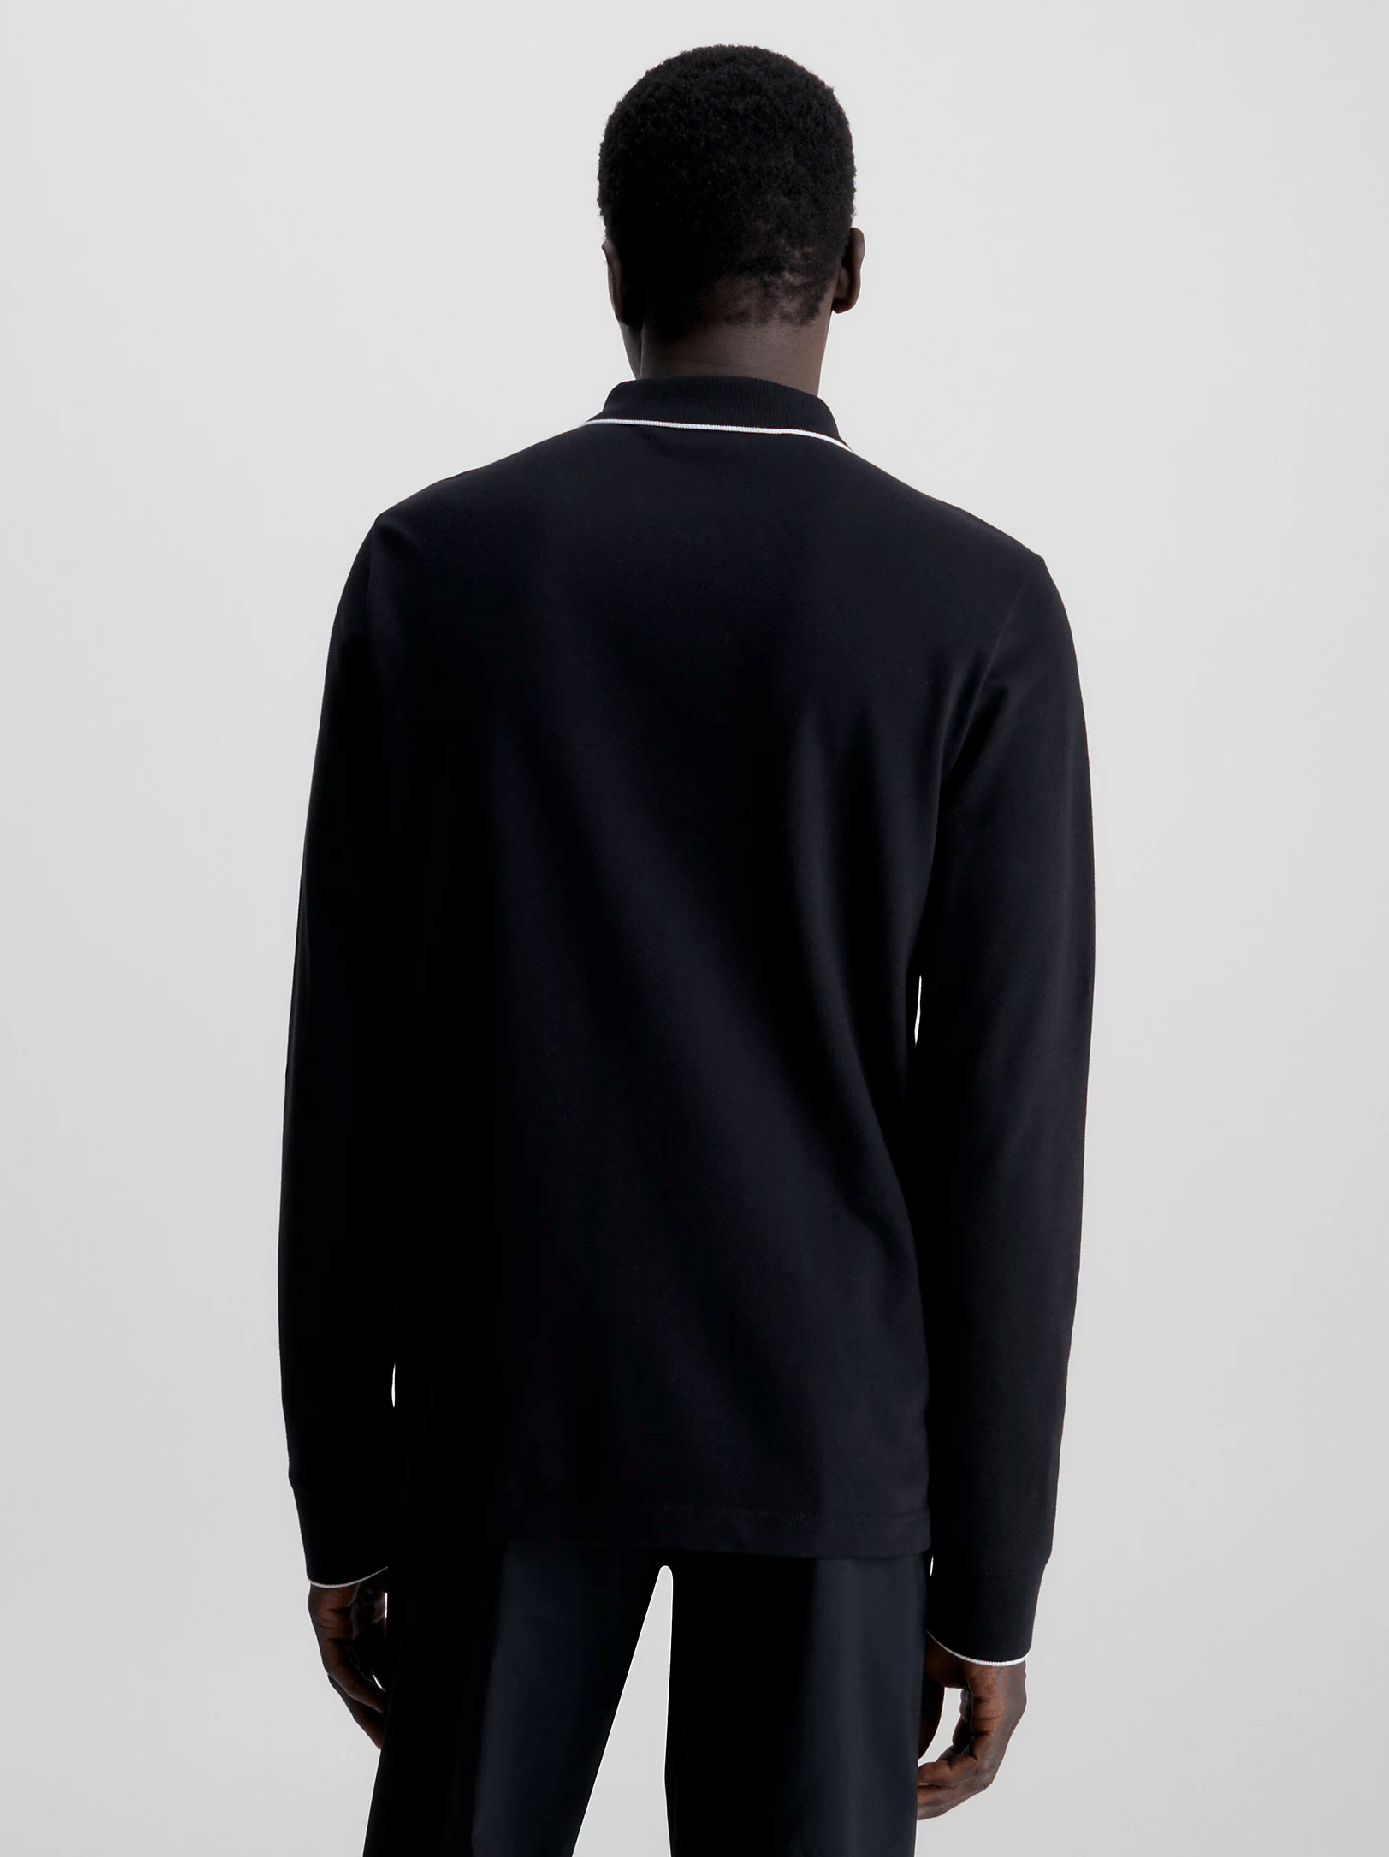 Ανδρική Μπλούζα Polo Μαύρη Calvin Klein